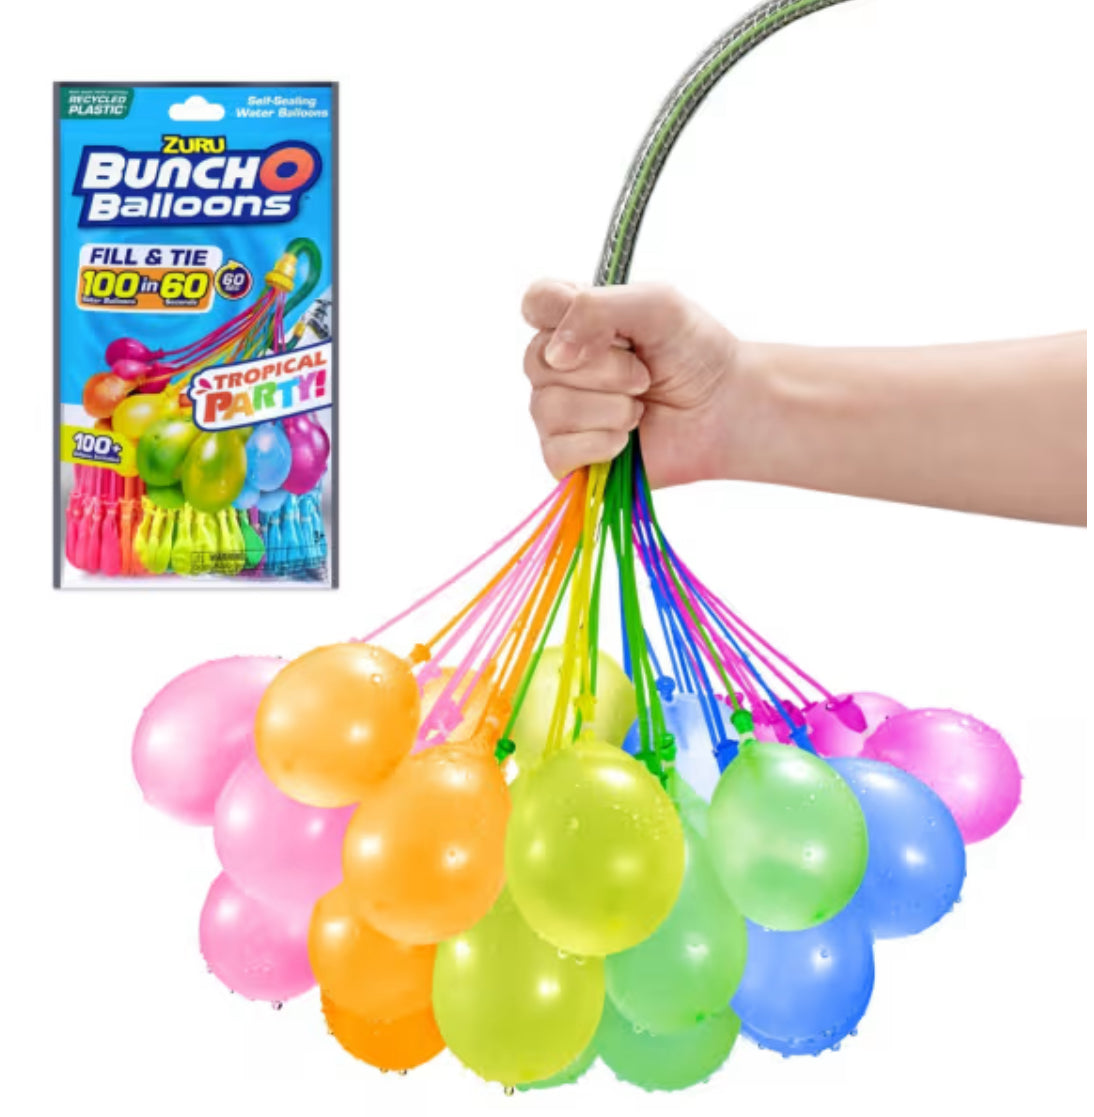 BunchO Ballons Tropical Party 100 Water Ballons